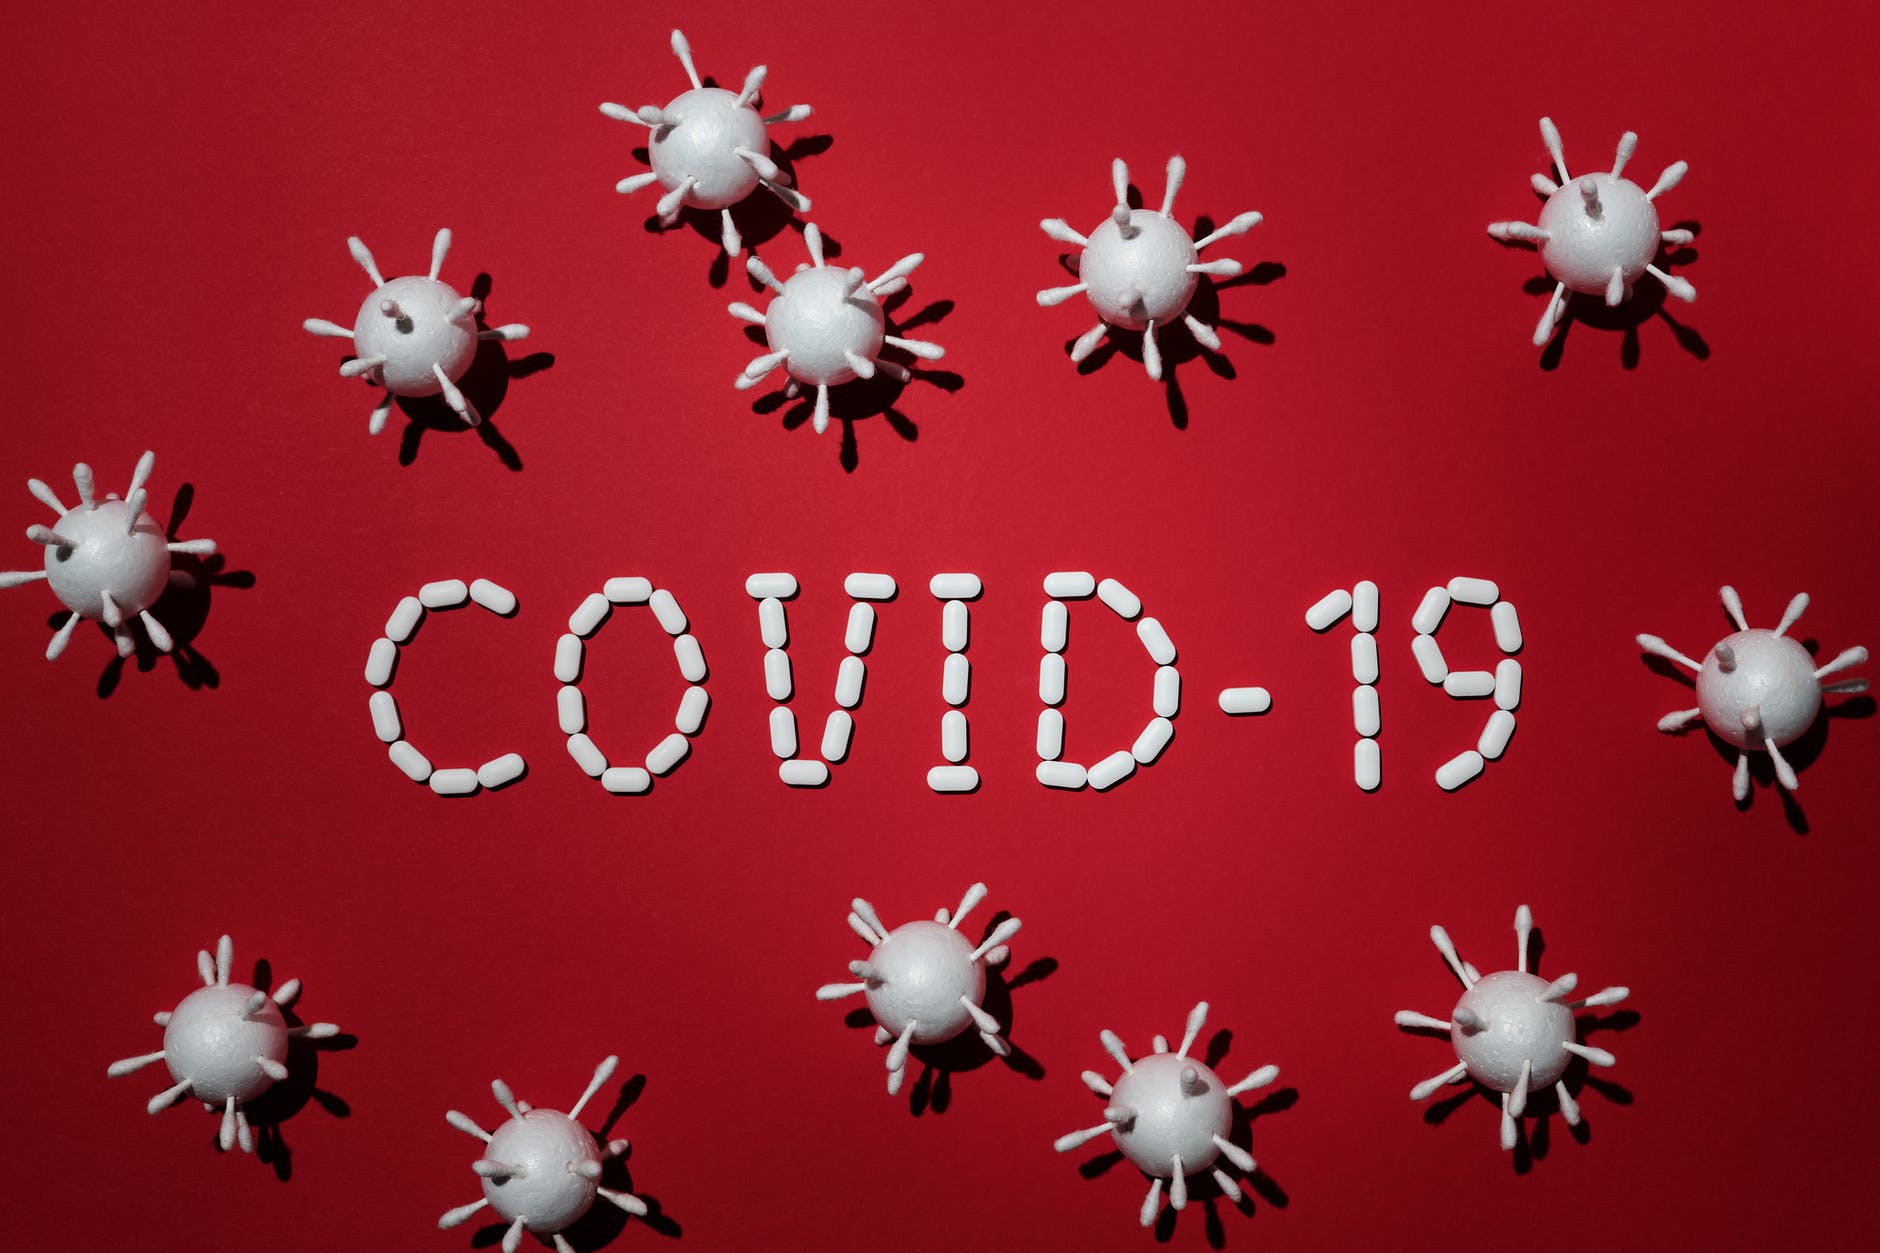 covid-19 myths